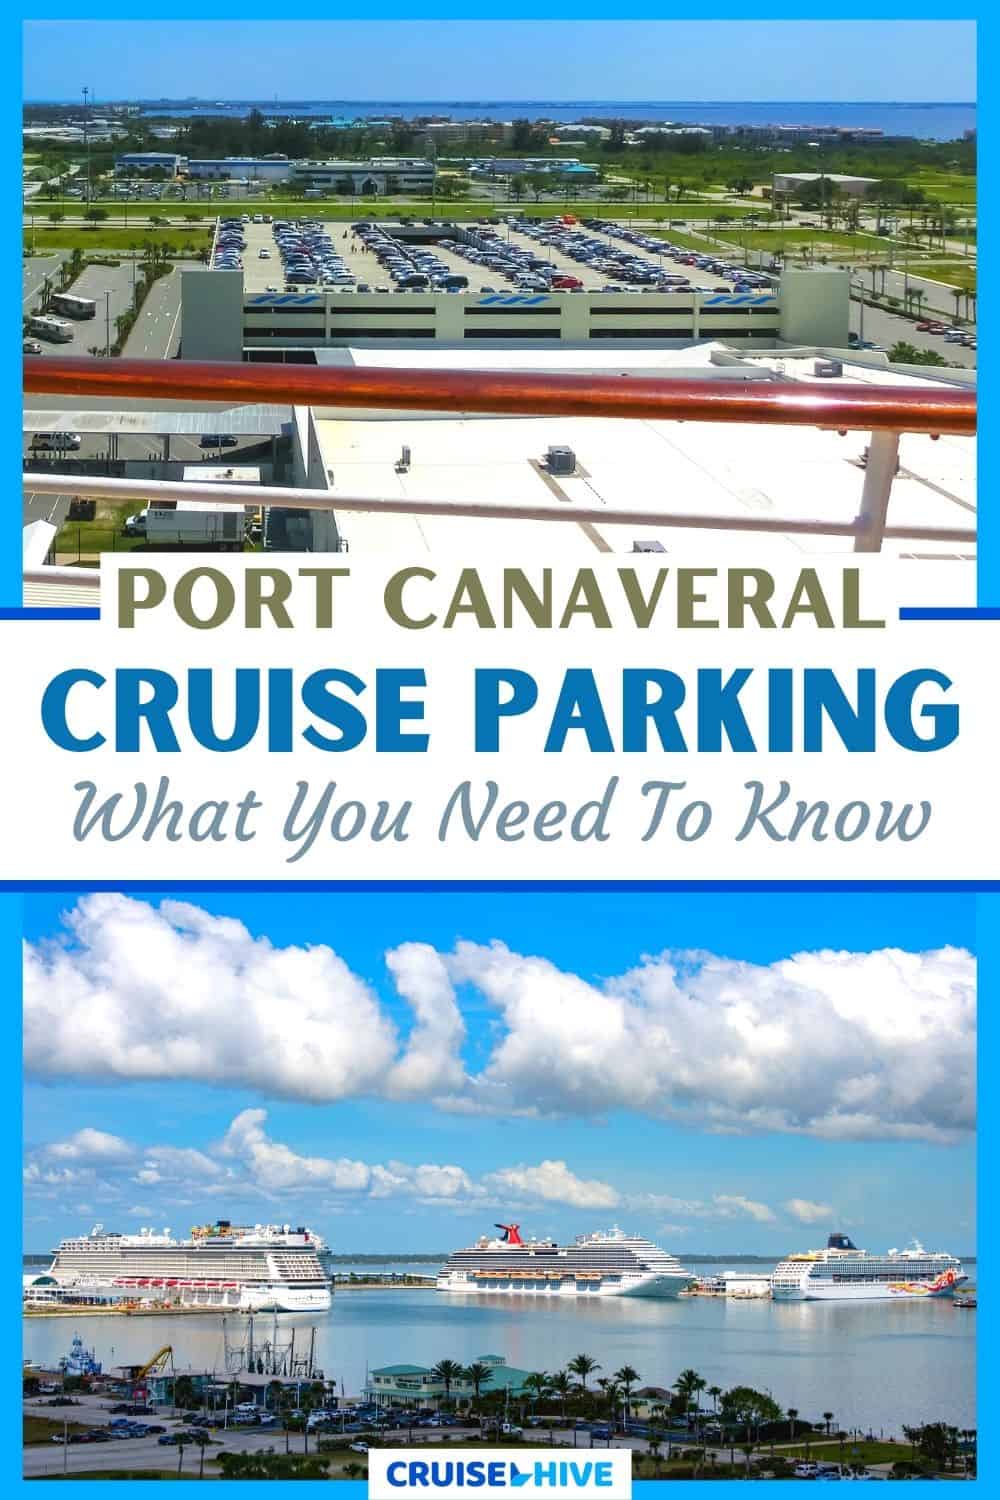 Estacionamiento de cruceros en Puerto Cañaveral: lo que necesita saber